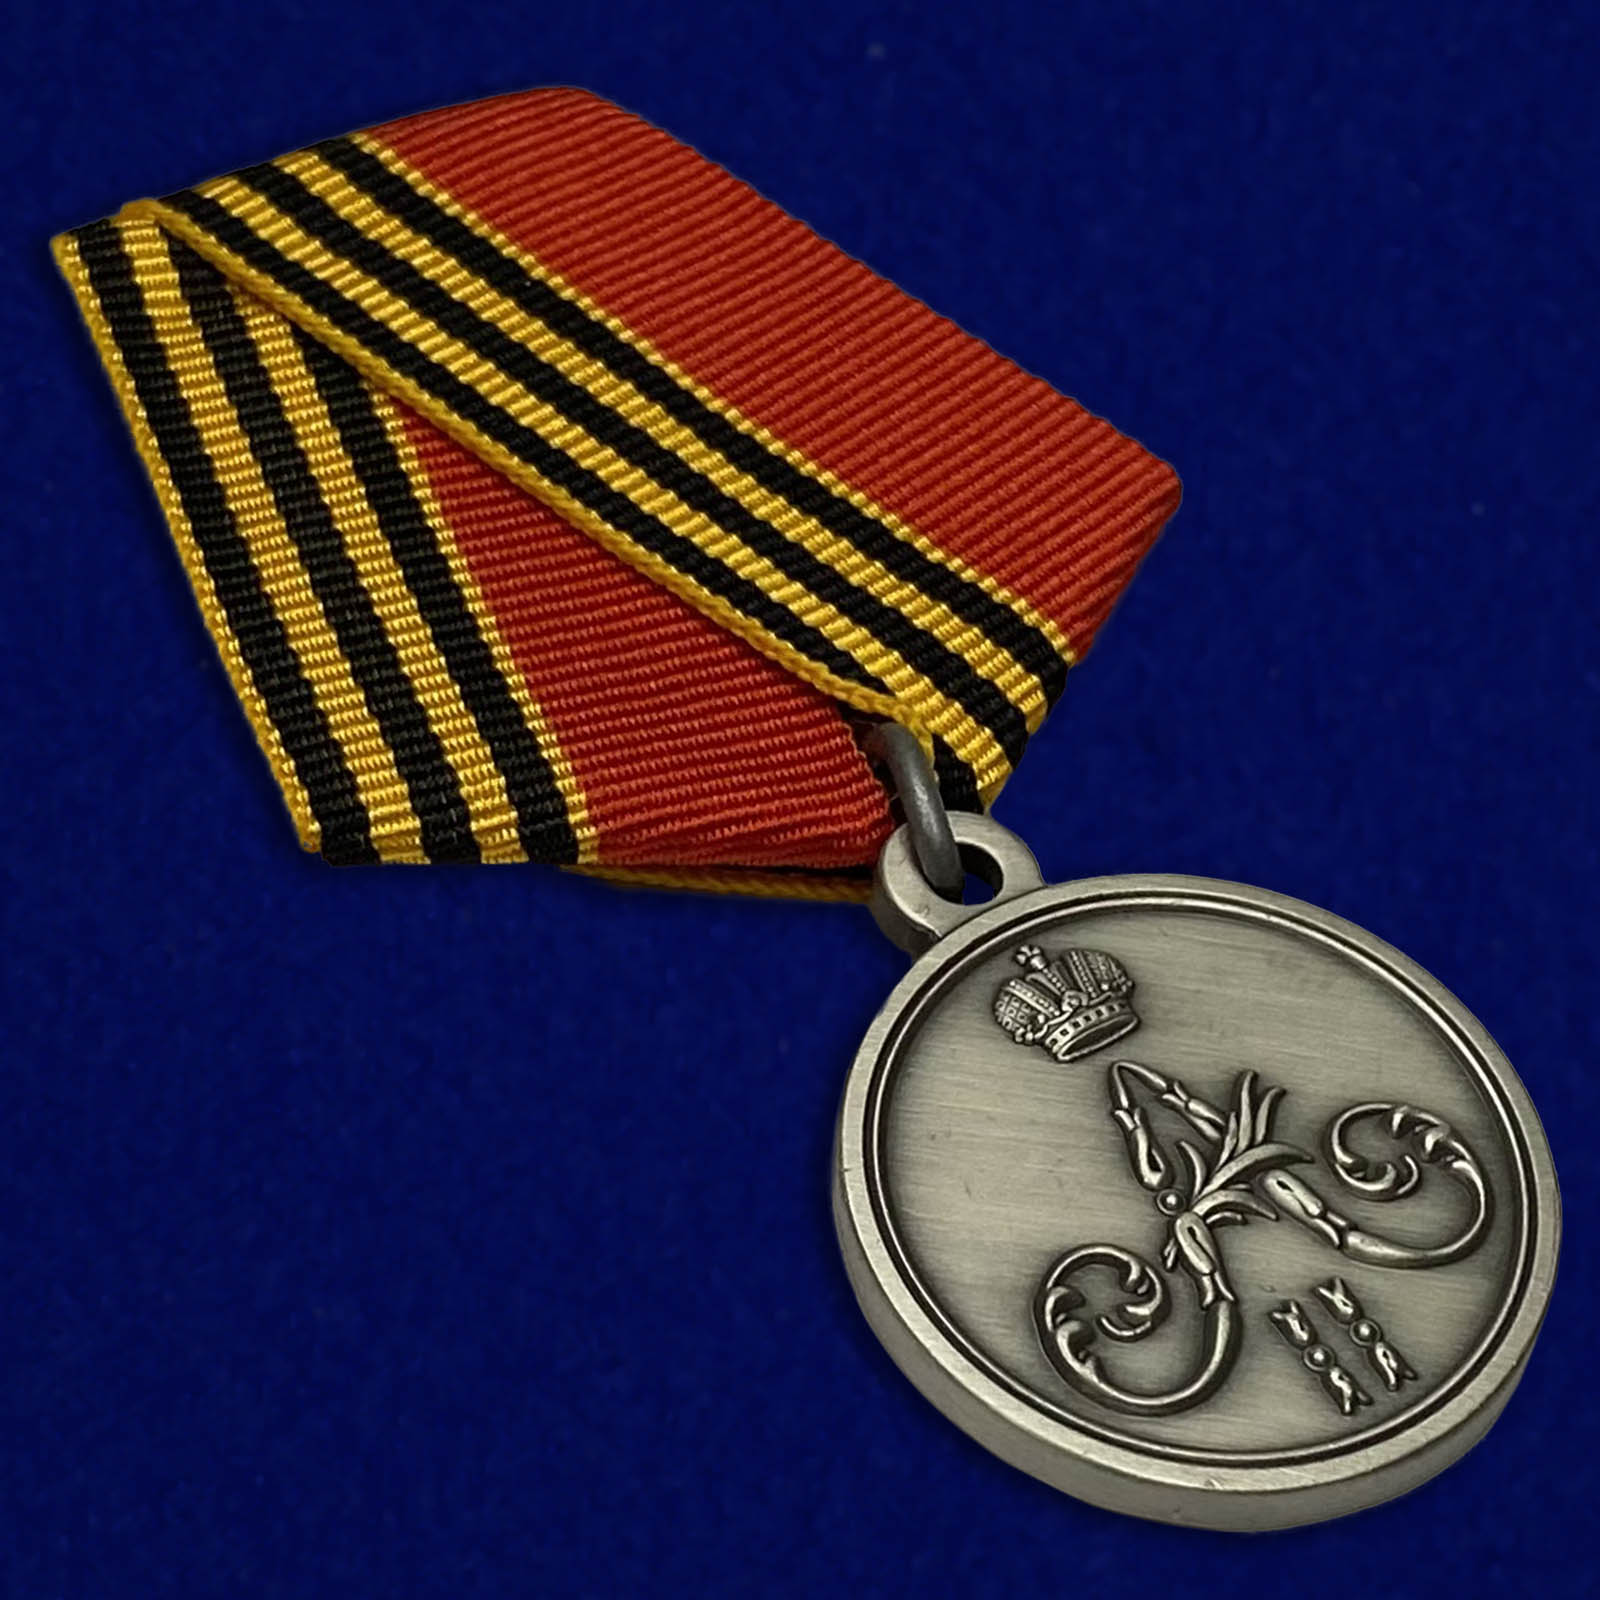 Купить медаль "За покорение Чечни и Дагестана" выгодно